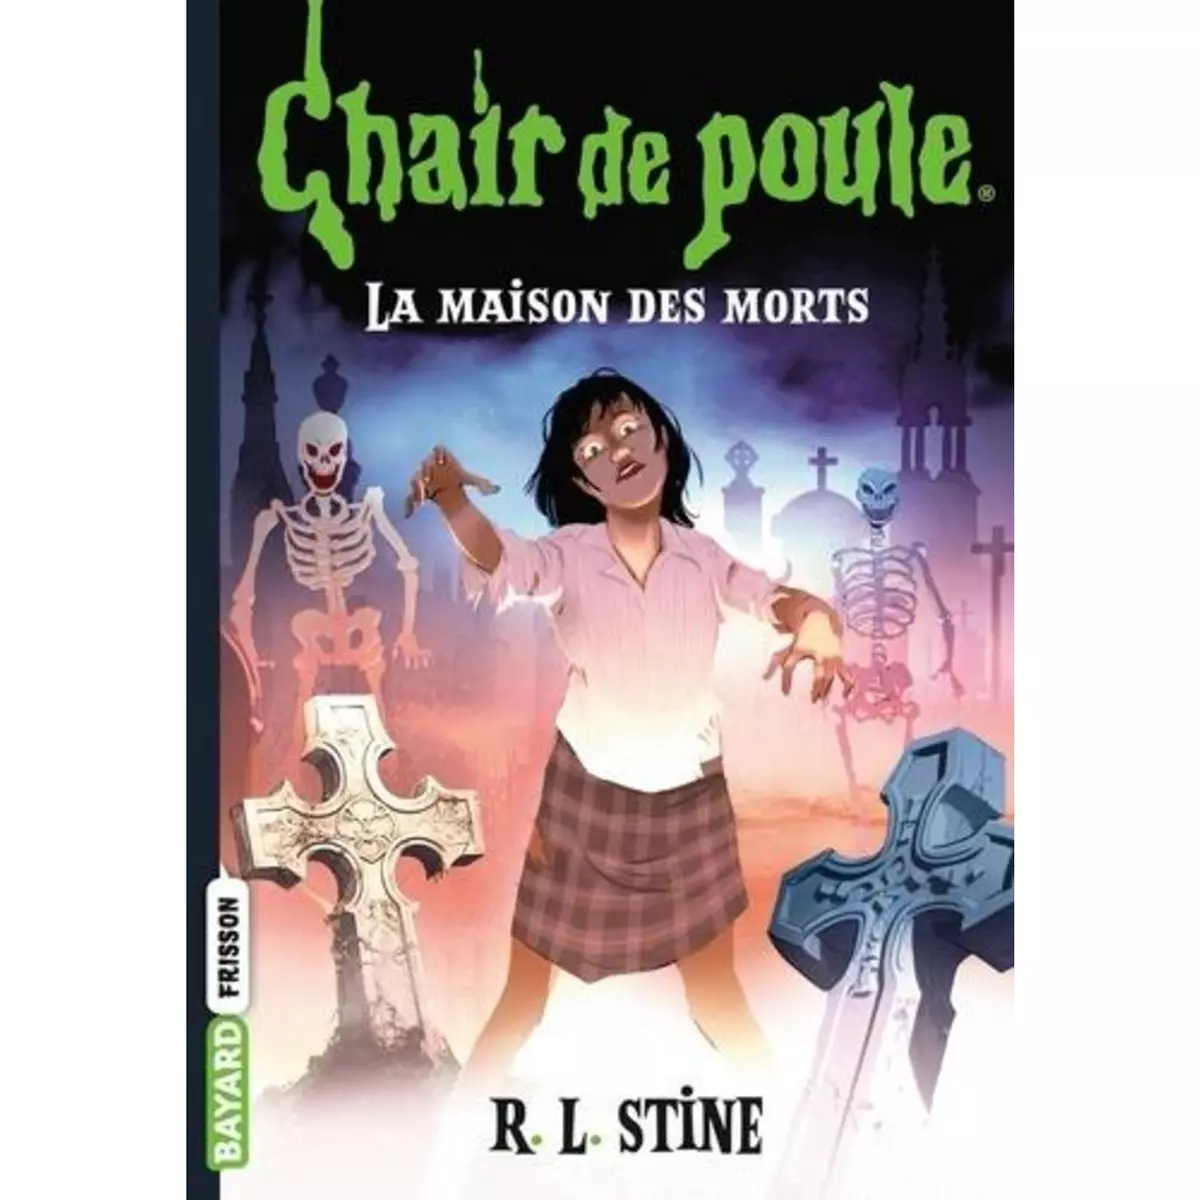  CHAIR DE POULE TOME 6 : LA MAISON DES MORTS, Stine R. L.